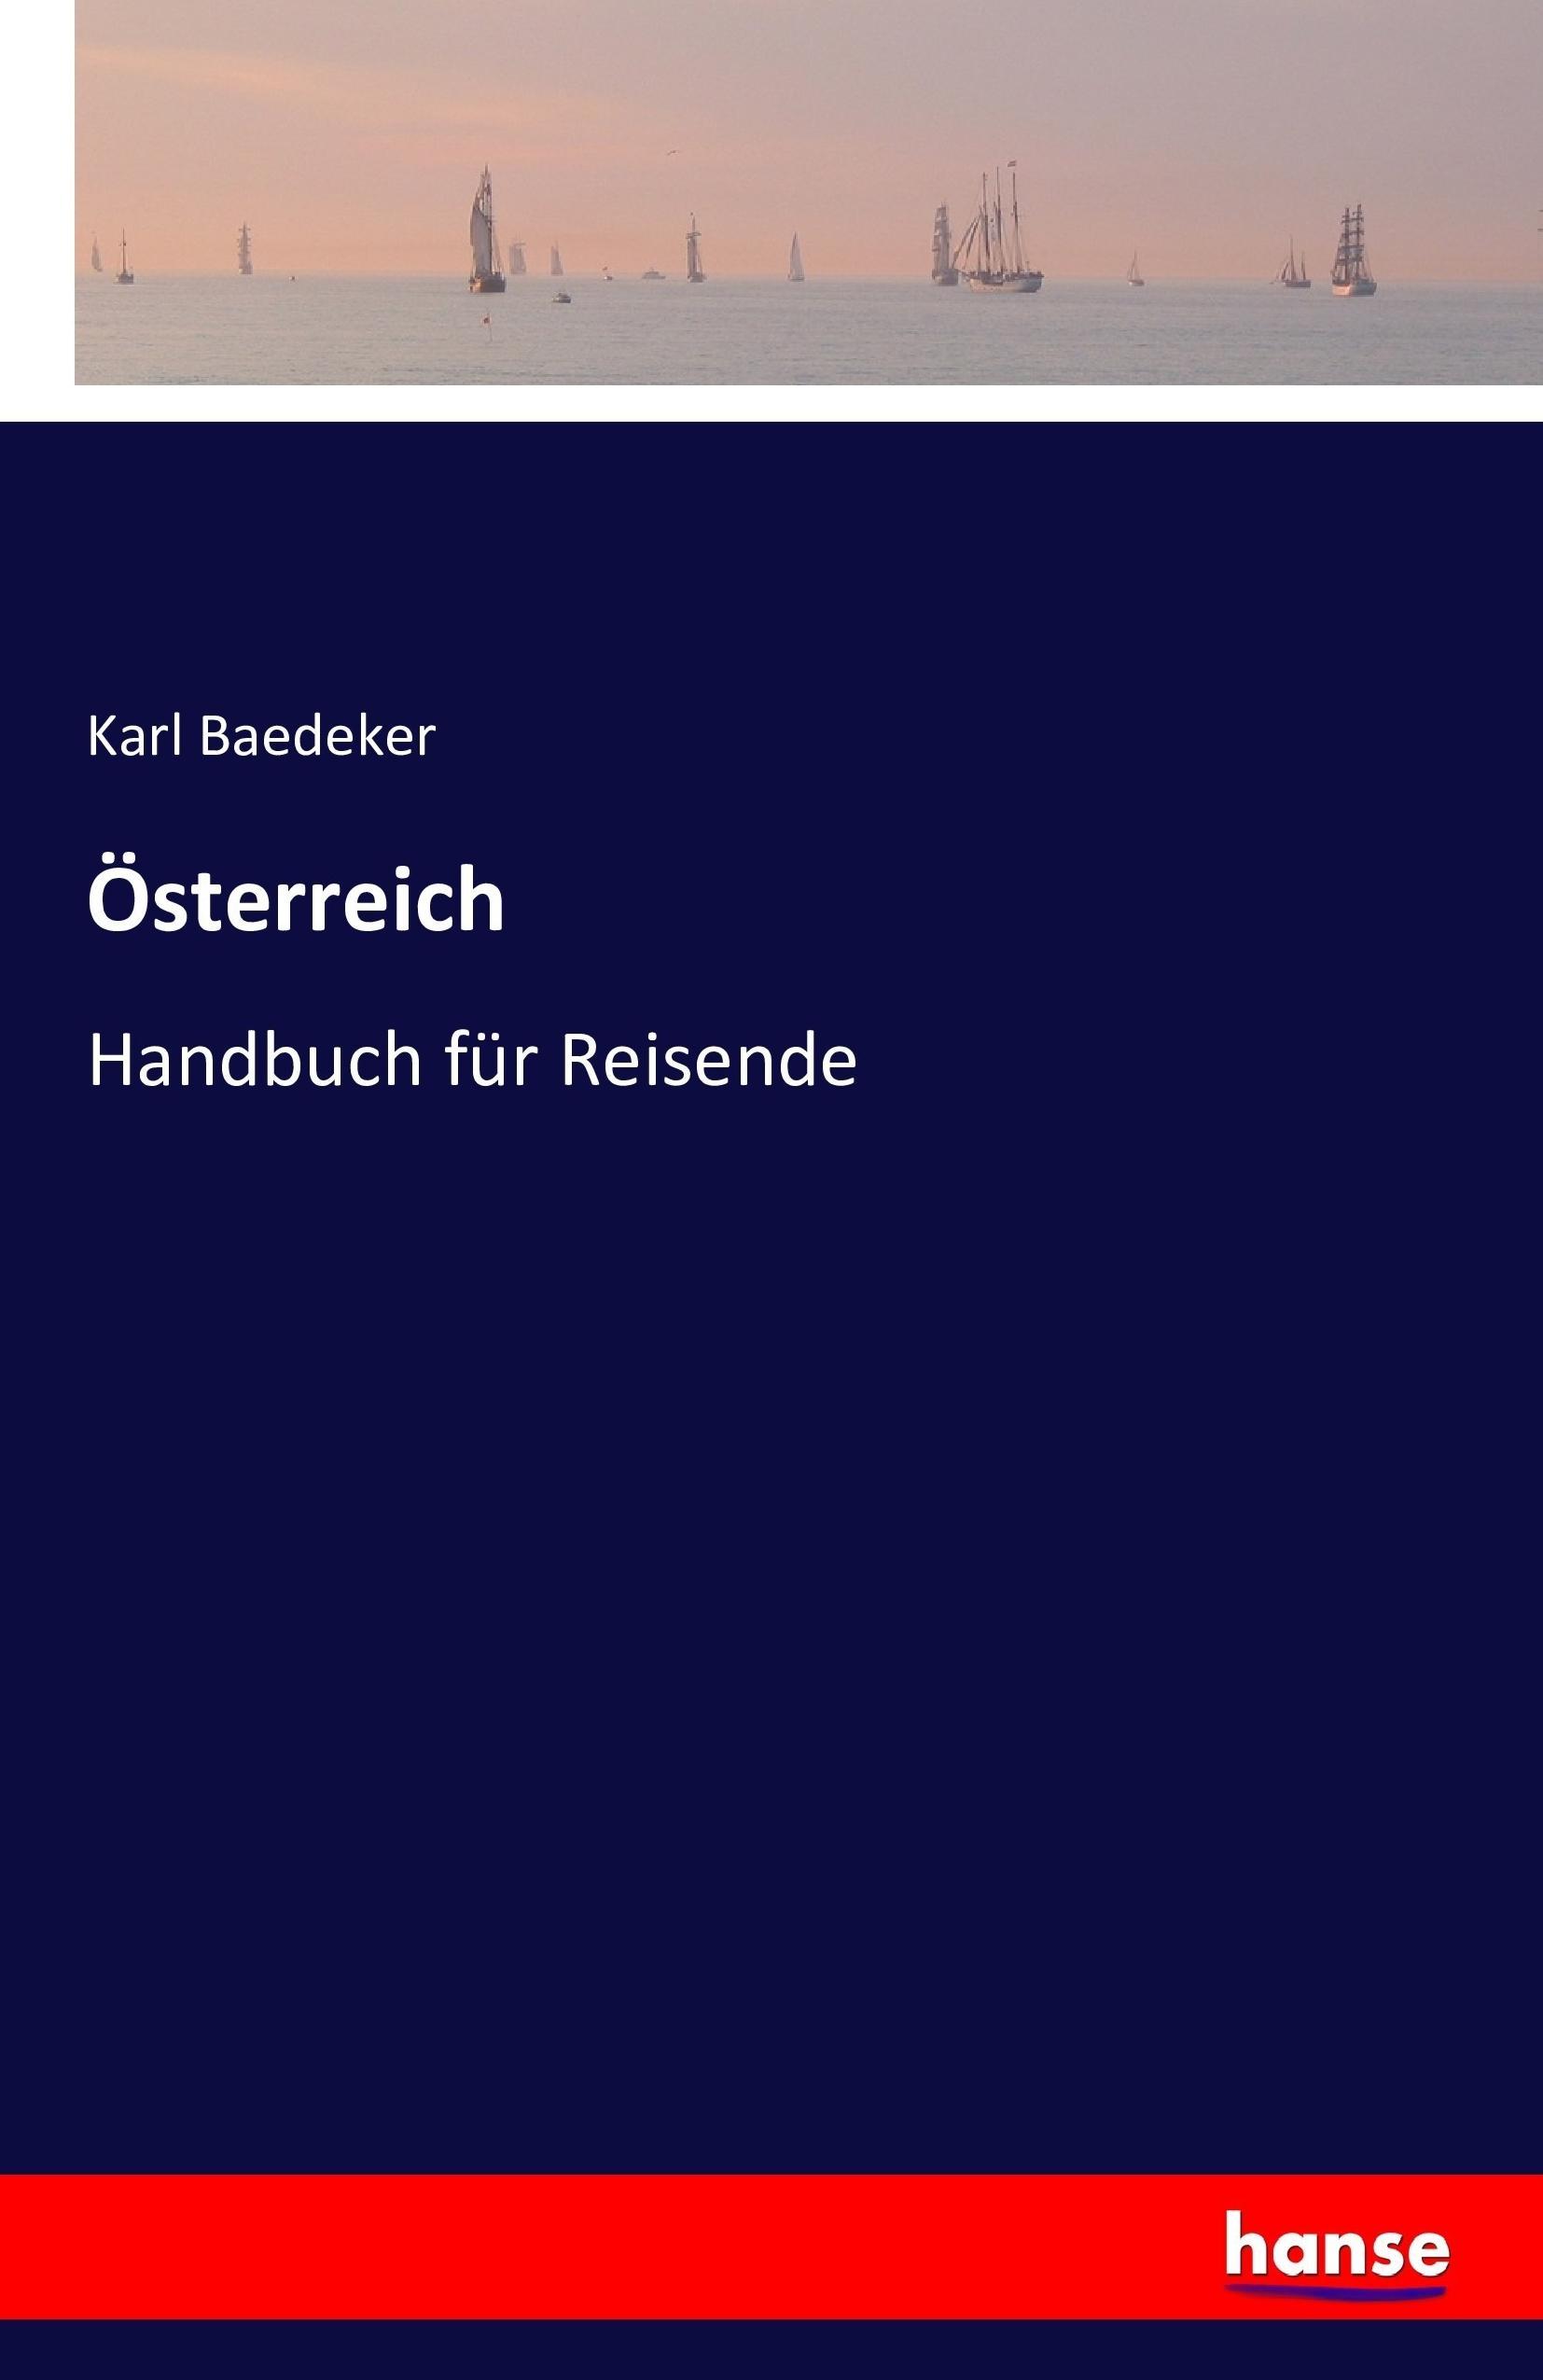 Österreich / Handbuch für Reisende / Karl Baedeker / Taschenbuch / Paperback / 440 S. / Deutsch / 2016 / hansebooks / EAN 9783743328860 - Baedeker, Karl